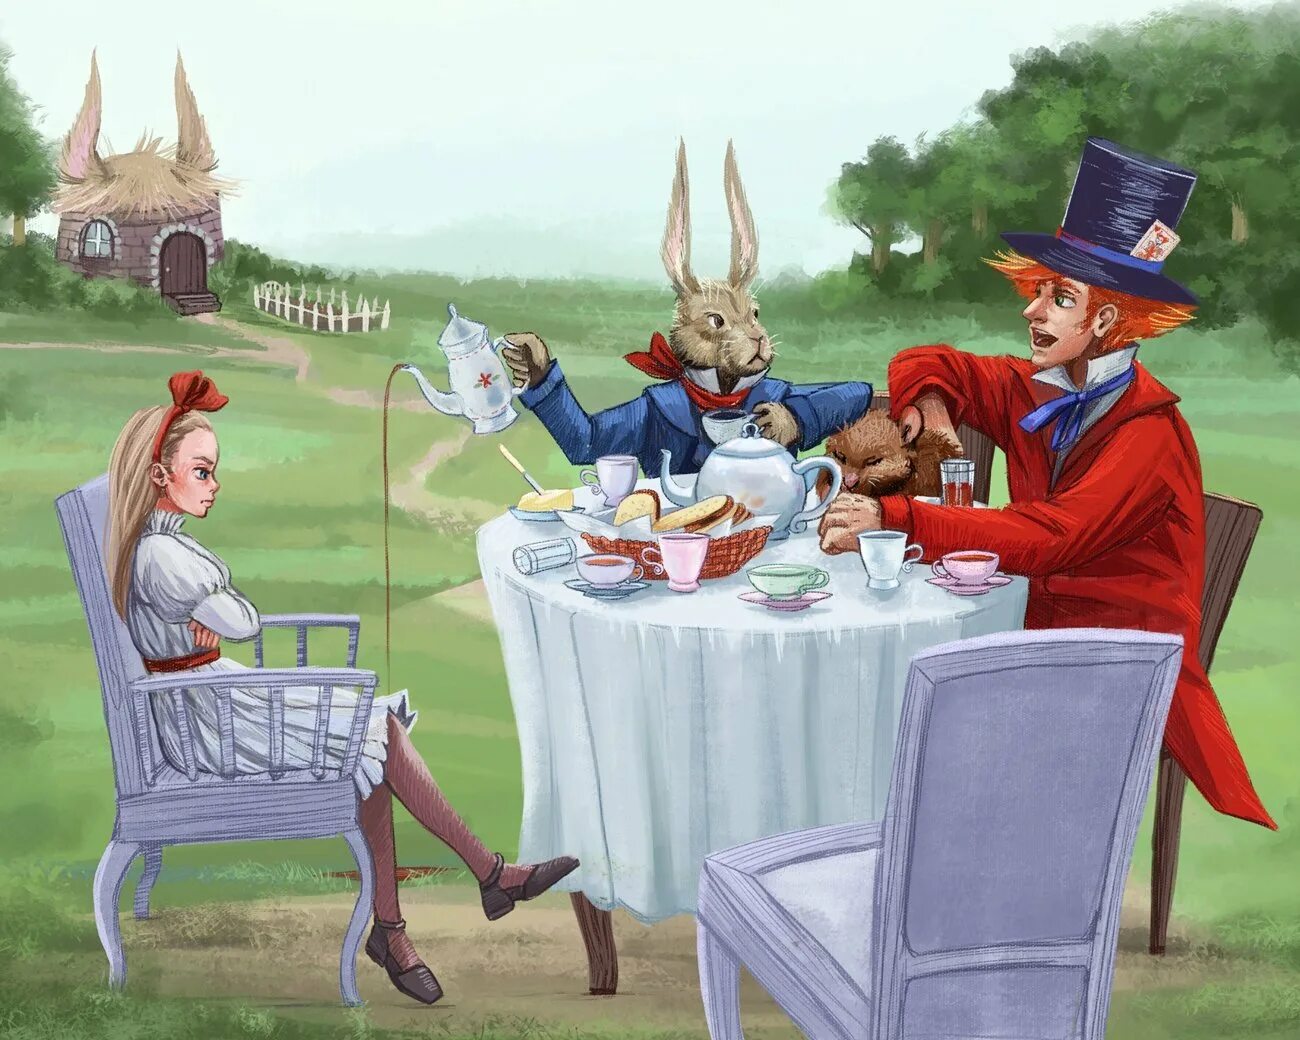 Сцена чаепитие. Алиса в стране чудес чаепитие у Шляпника. Алиса в стране чудес чаепитие у Шляпника арт. Чаепитие у Шляпника в Алисе. Алиса в стране чудес чаепитие у Шляпника иллюстрации.